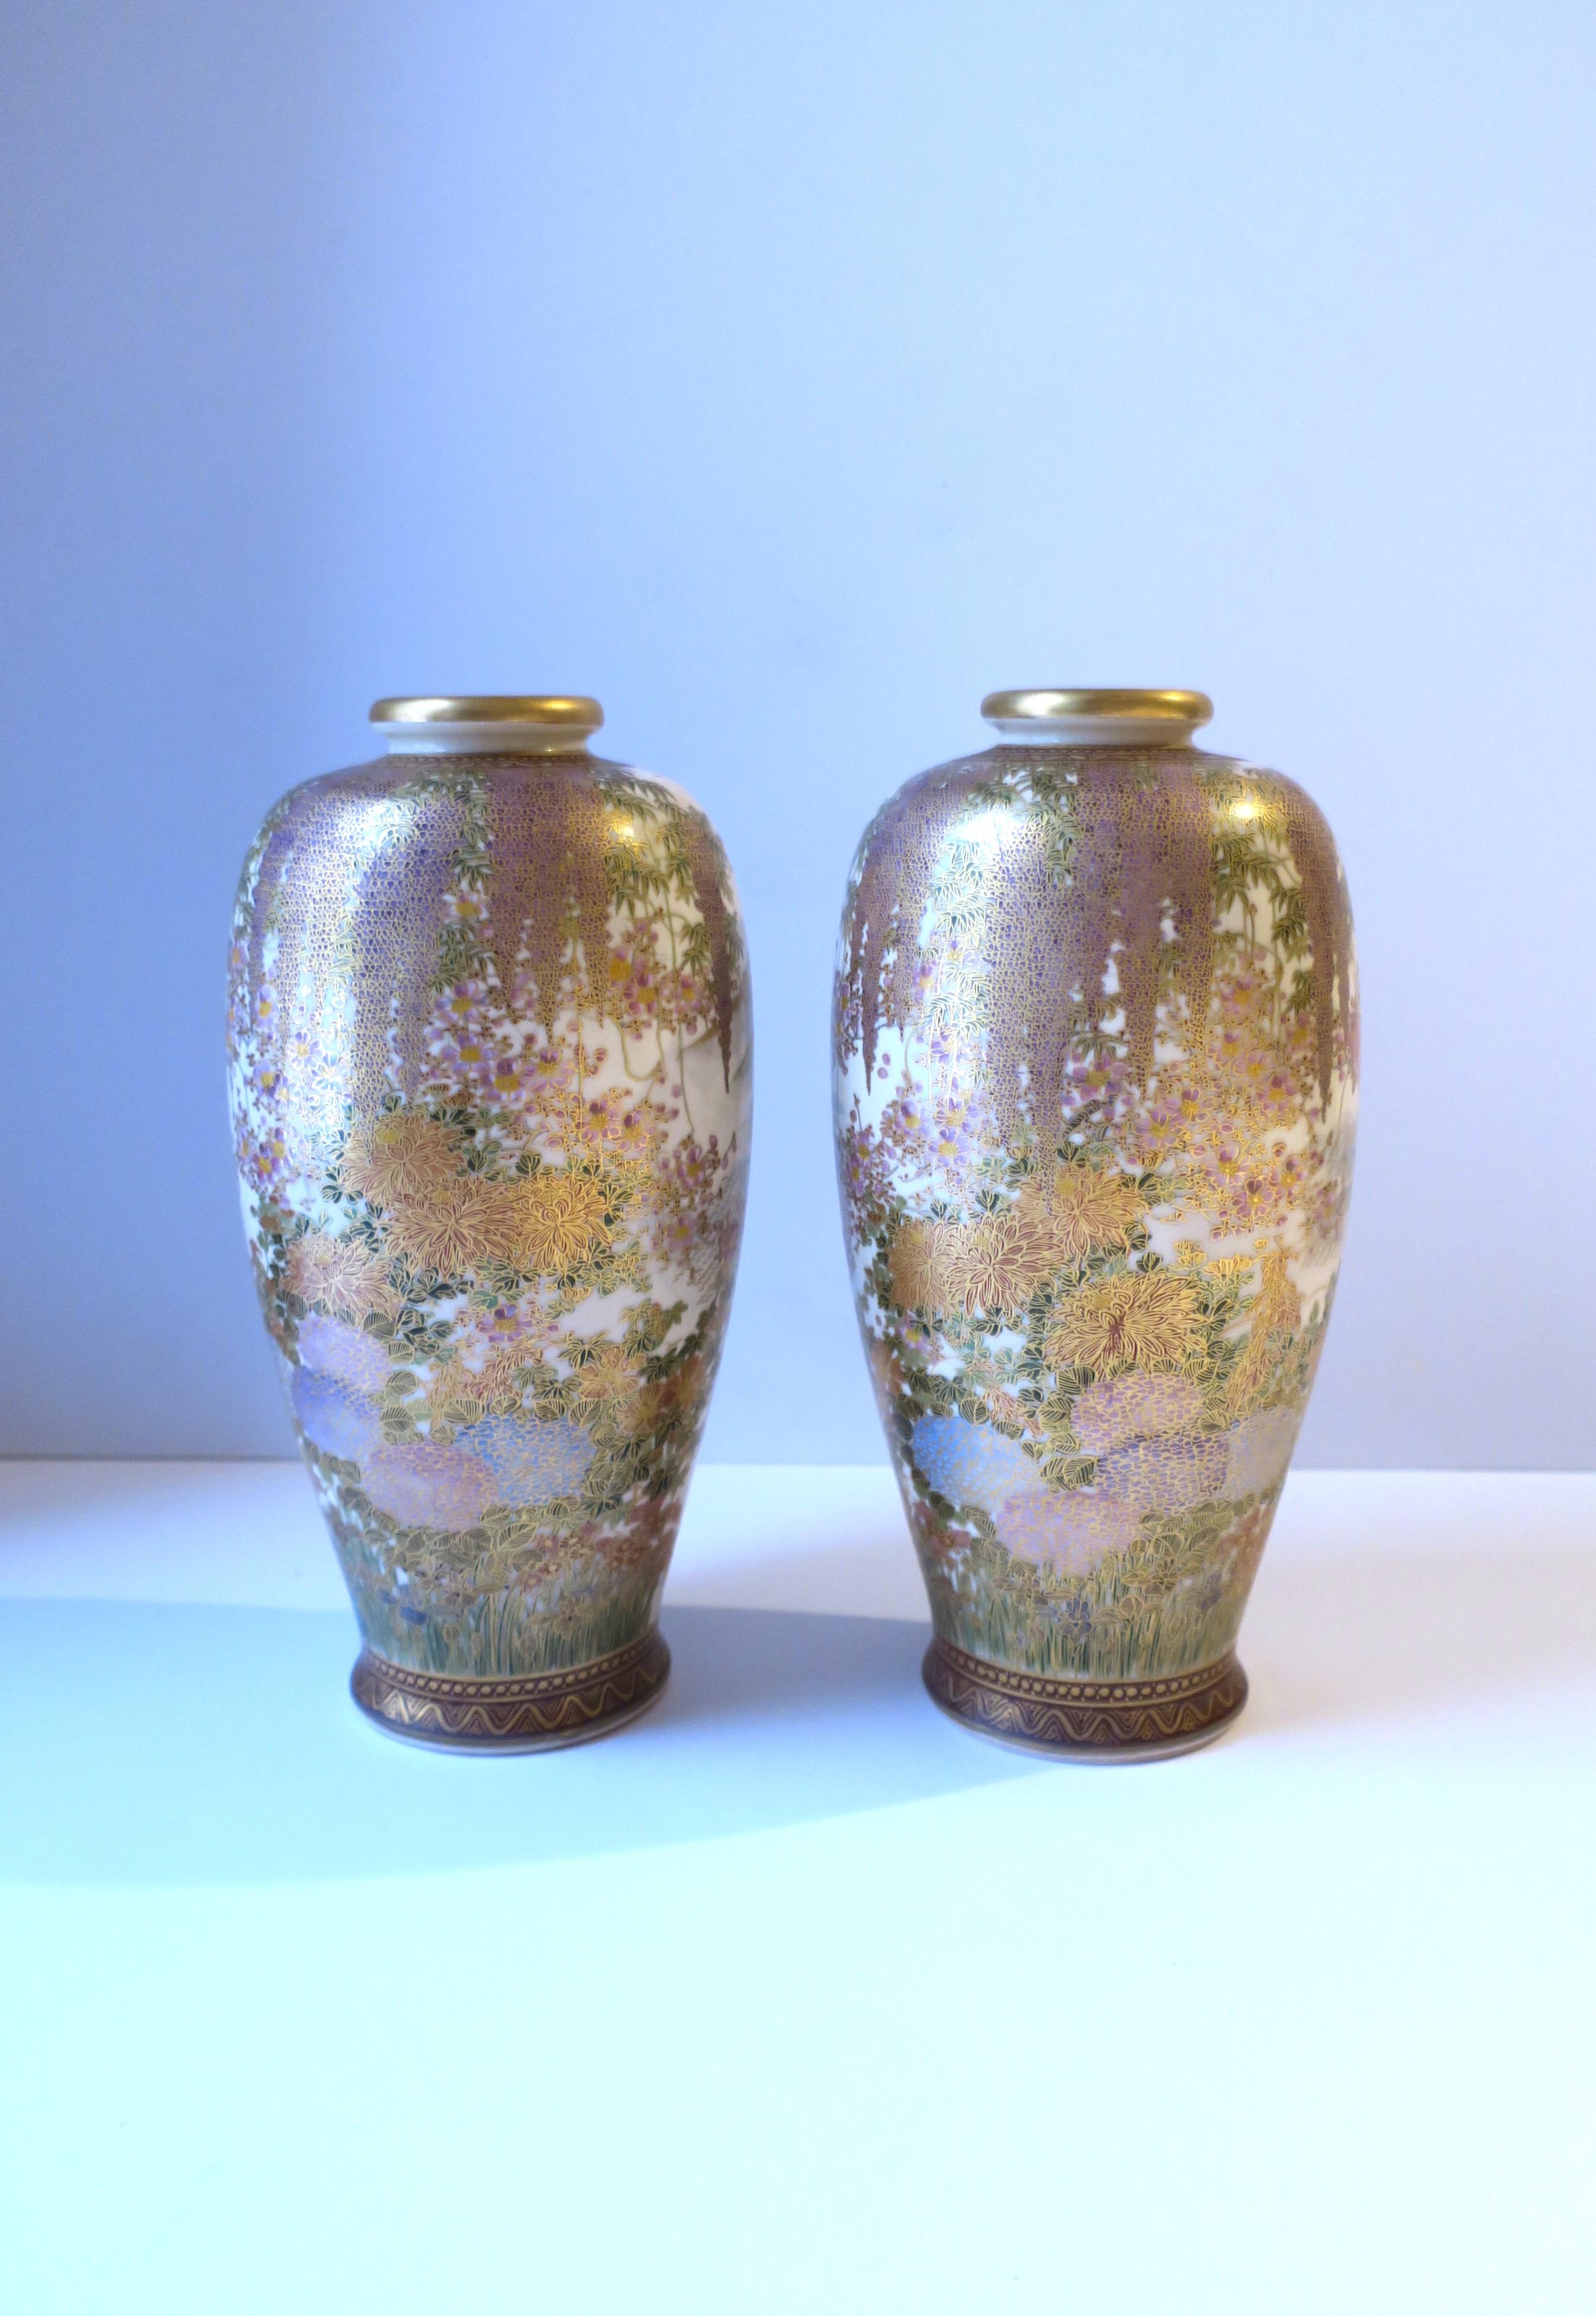 Magnifique paire de vases Satsuma en faïence japonaise, peints à la main, période Meiji, vers le début du 20e siècle, Japon. Les magnifiques décorations des vases sont de grande qualité et extrêmement détaillées, comme le montre l'illustration. Les